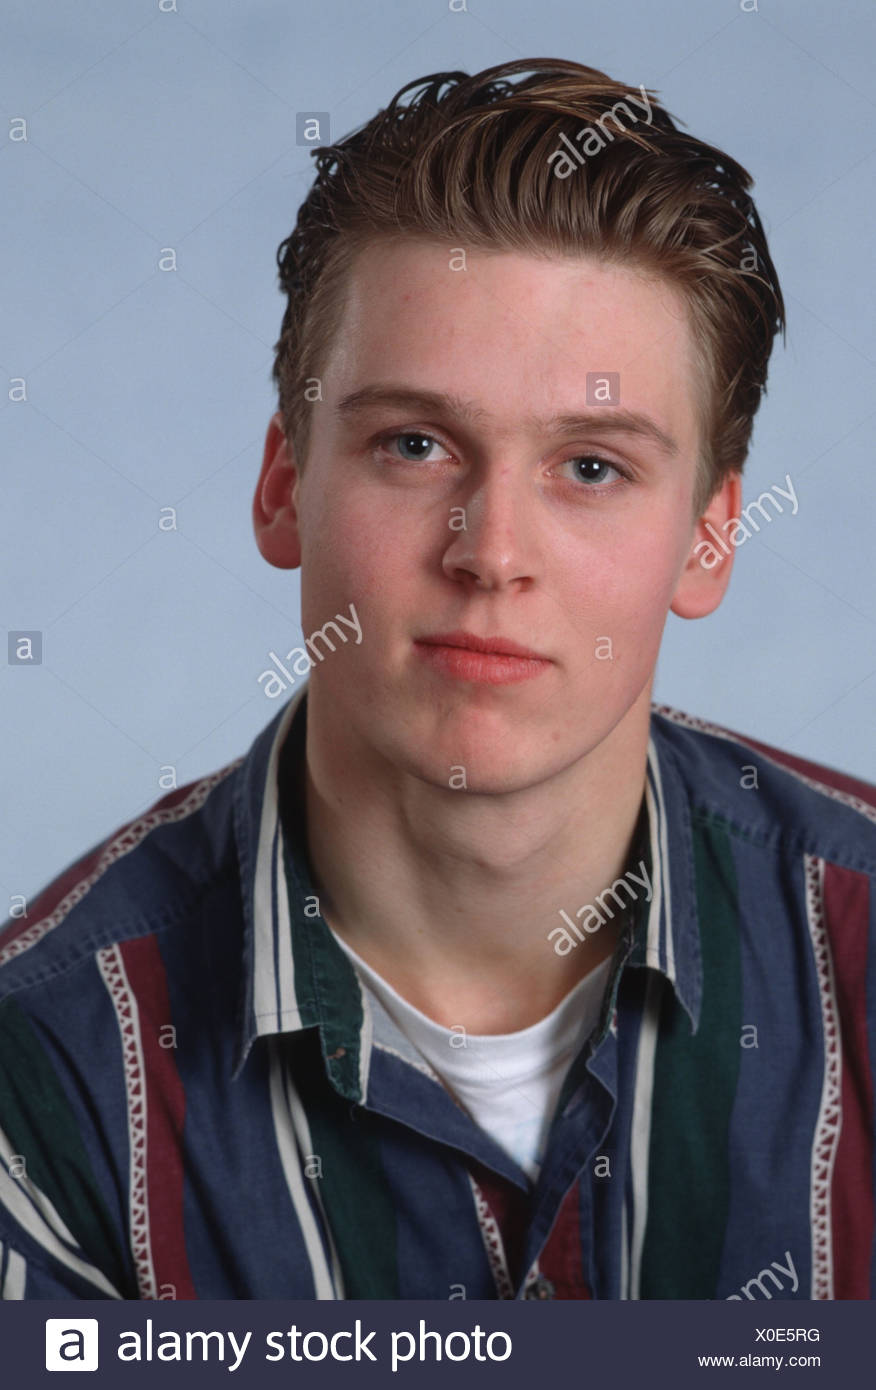 1980er Jahre Portrait Ernst Teenager Junge In Hemd Und Typischen 80er Jahre Frisur Stockfotografie Alamy